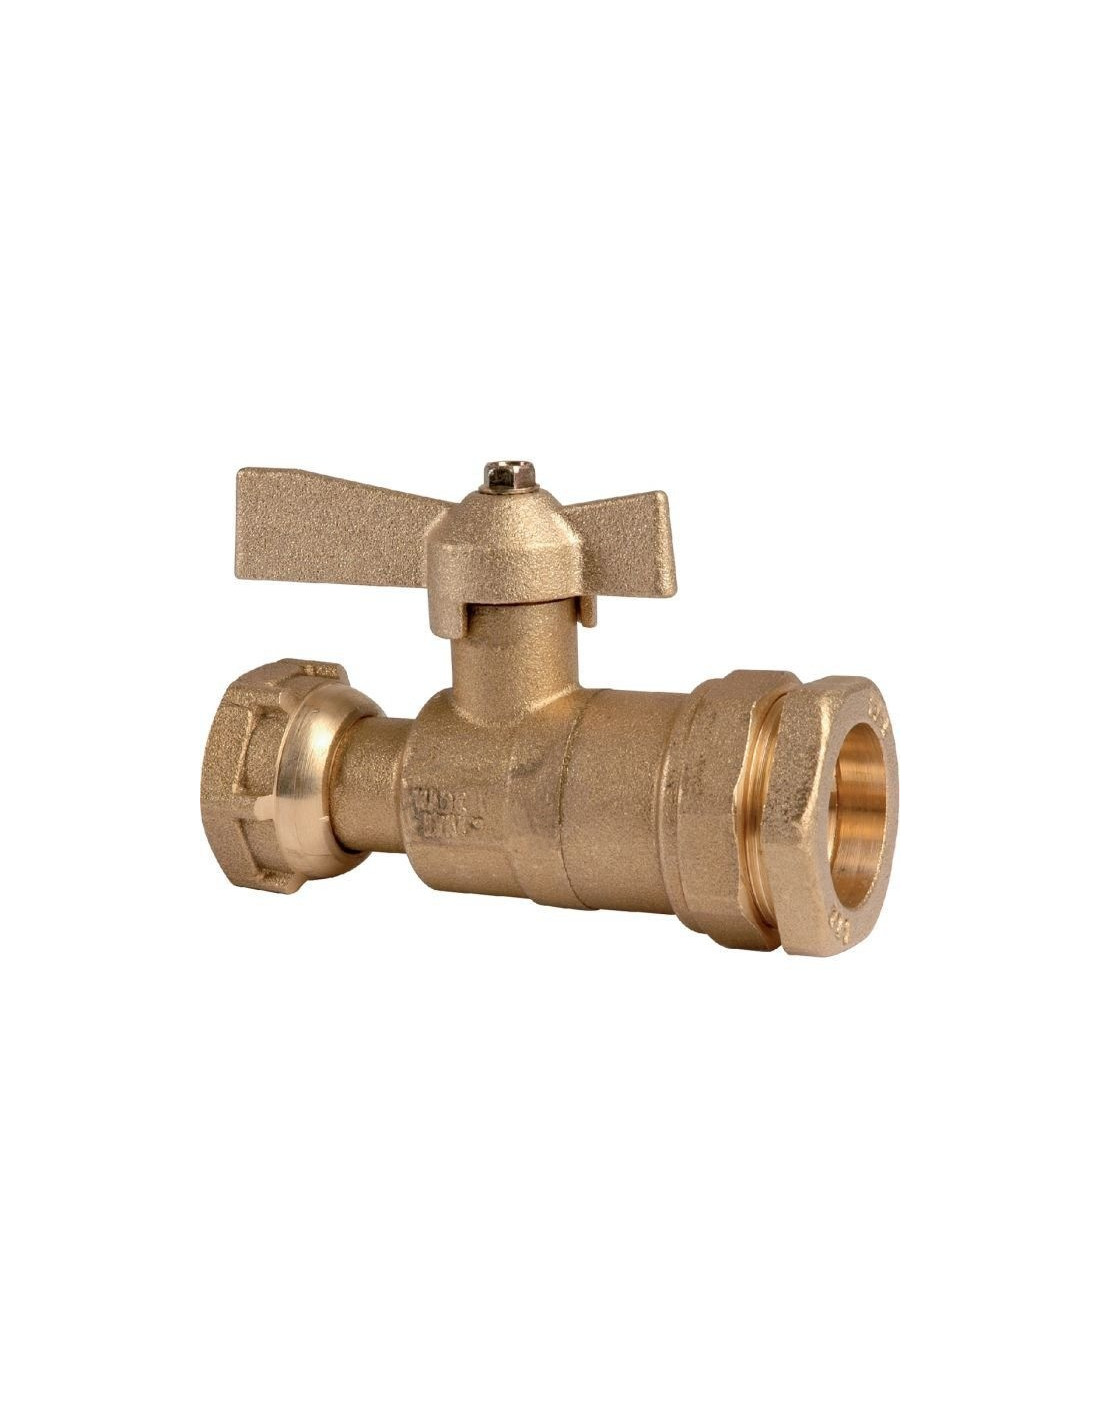 Vanne de robinet d'arrêt de haute qualité pour robinet de tuyau d'eau 20 mm  25